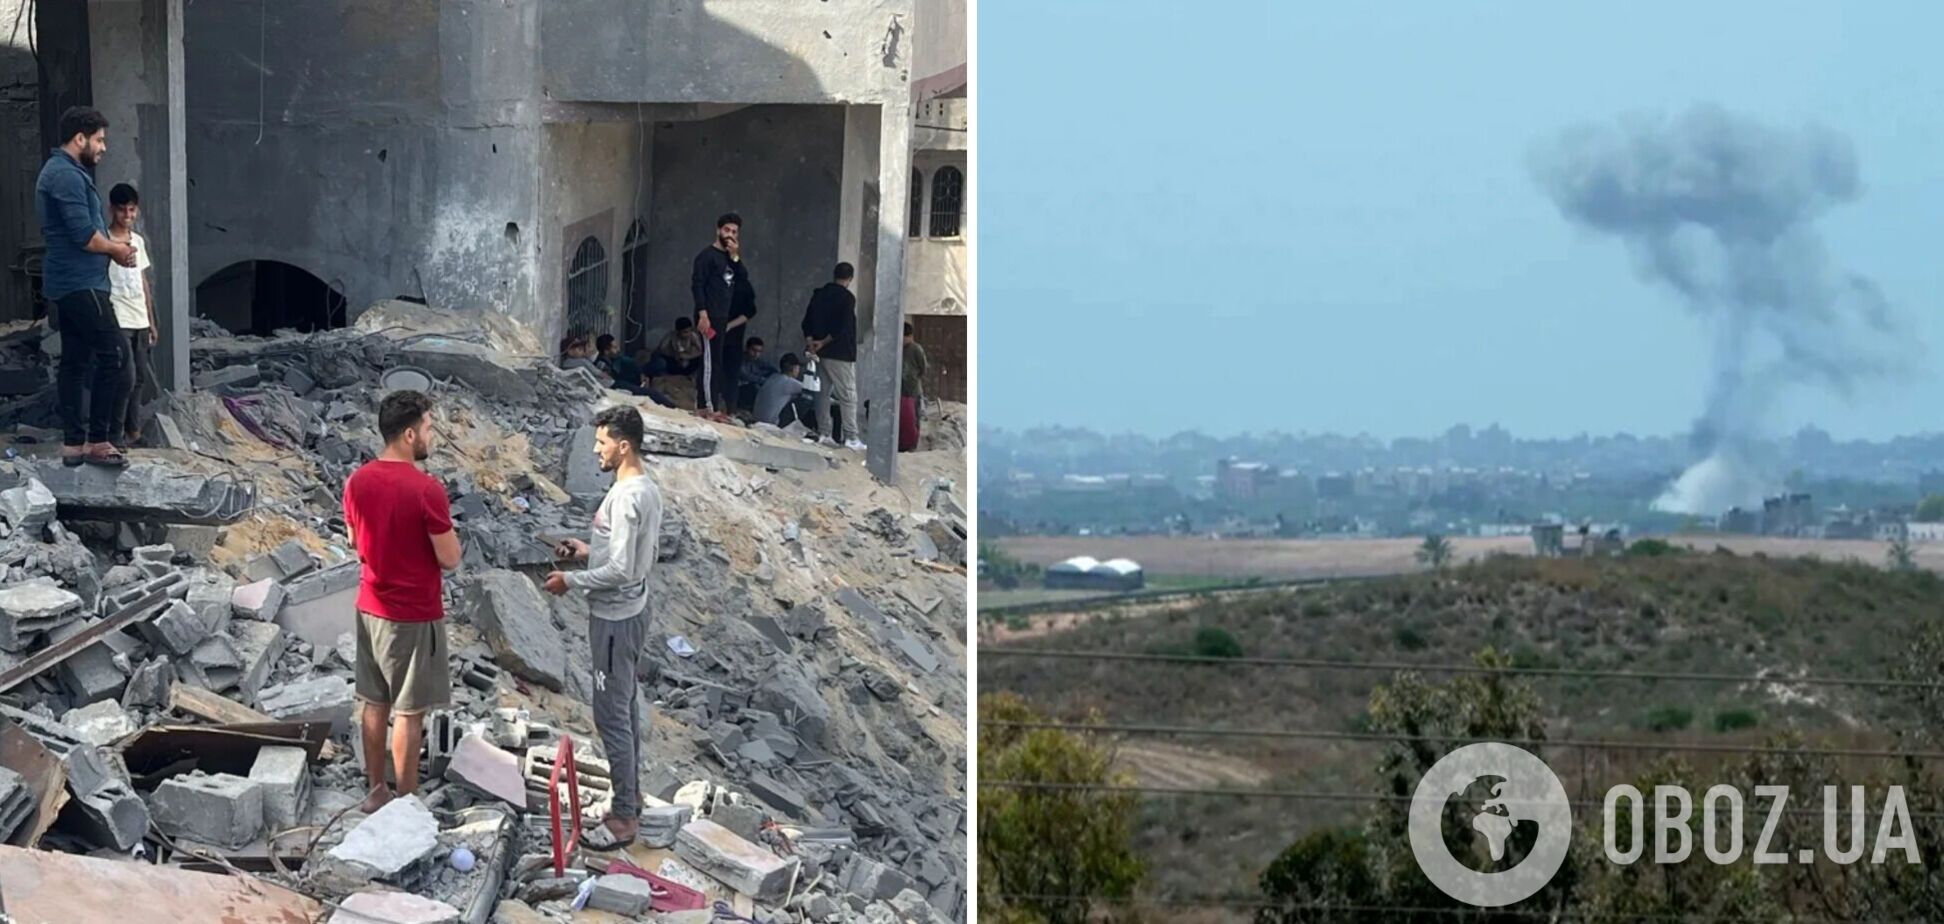 Палестина и Израиль договорились о прекращении огня после серии ракетных ударов: все подробности. Фото